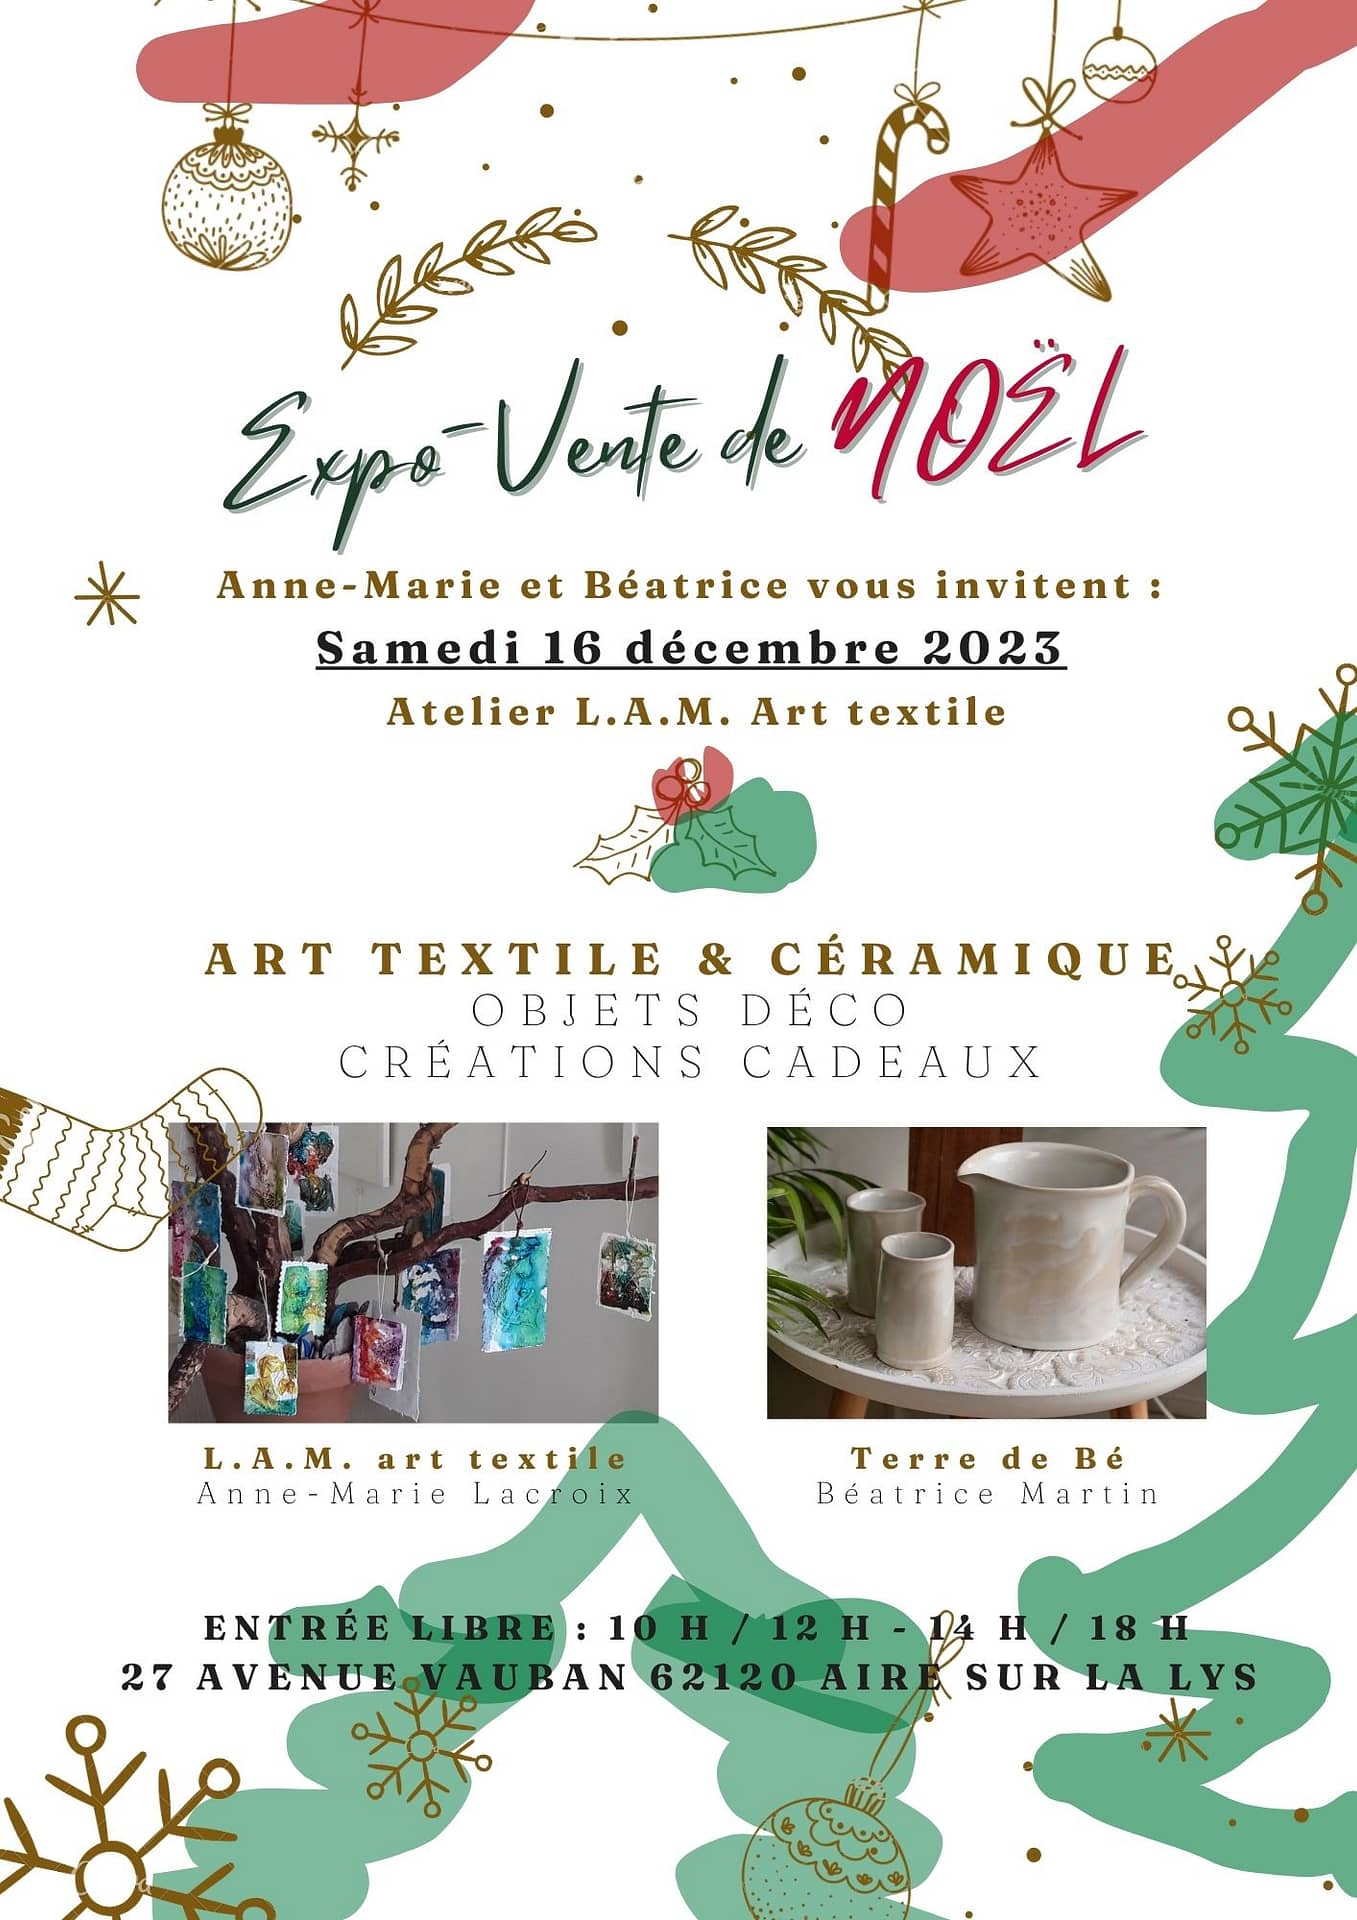 Exposition art textile céramique St Omer